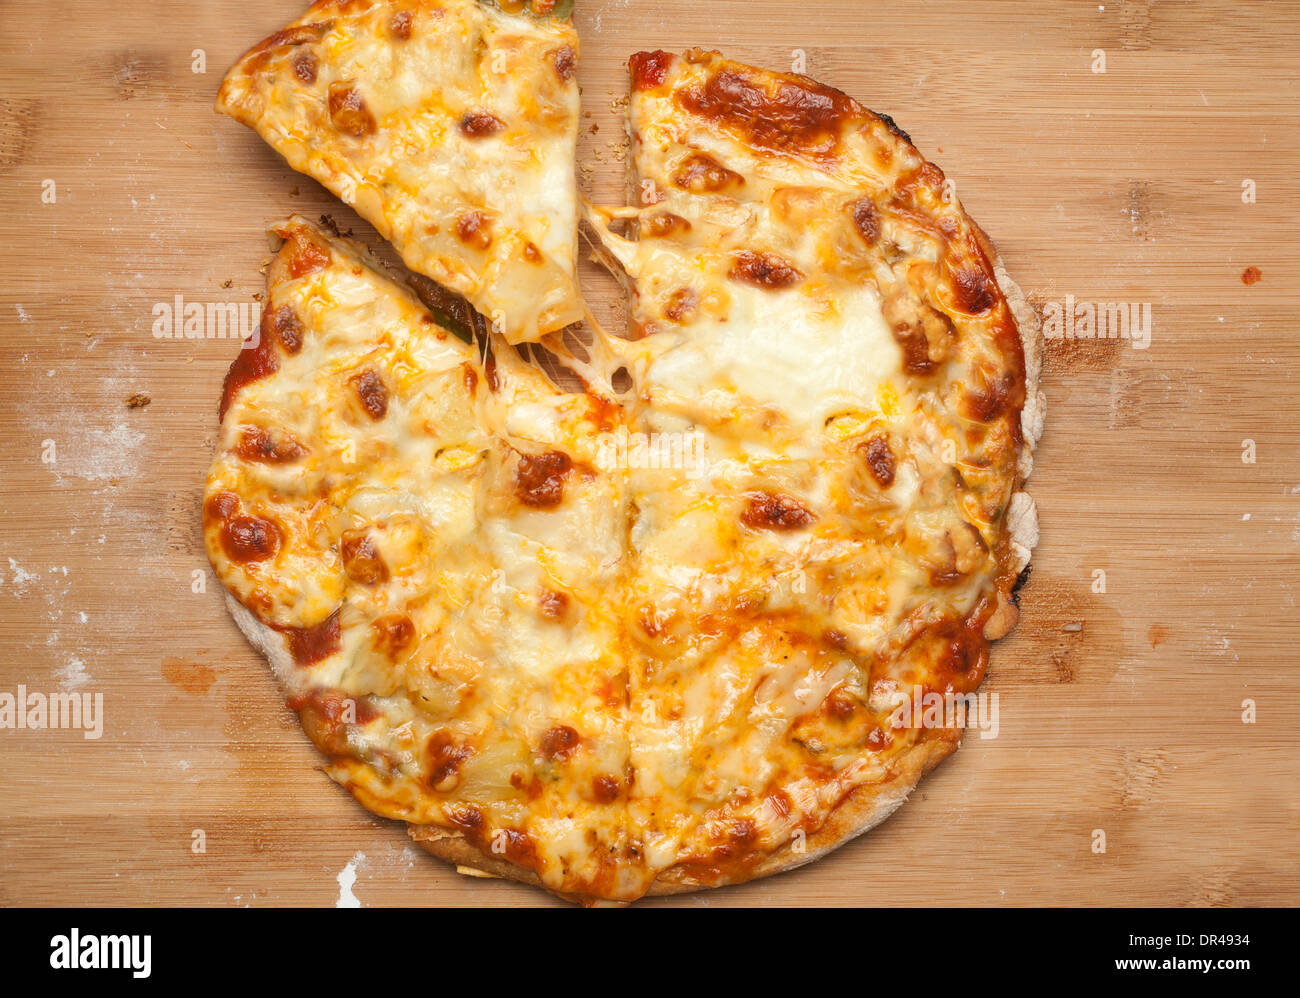 Pizza au fromage entier avec la première coupe prises Banque D'Images